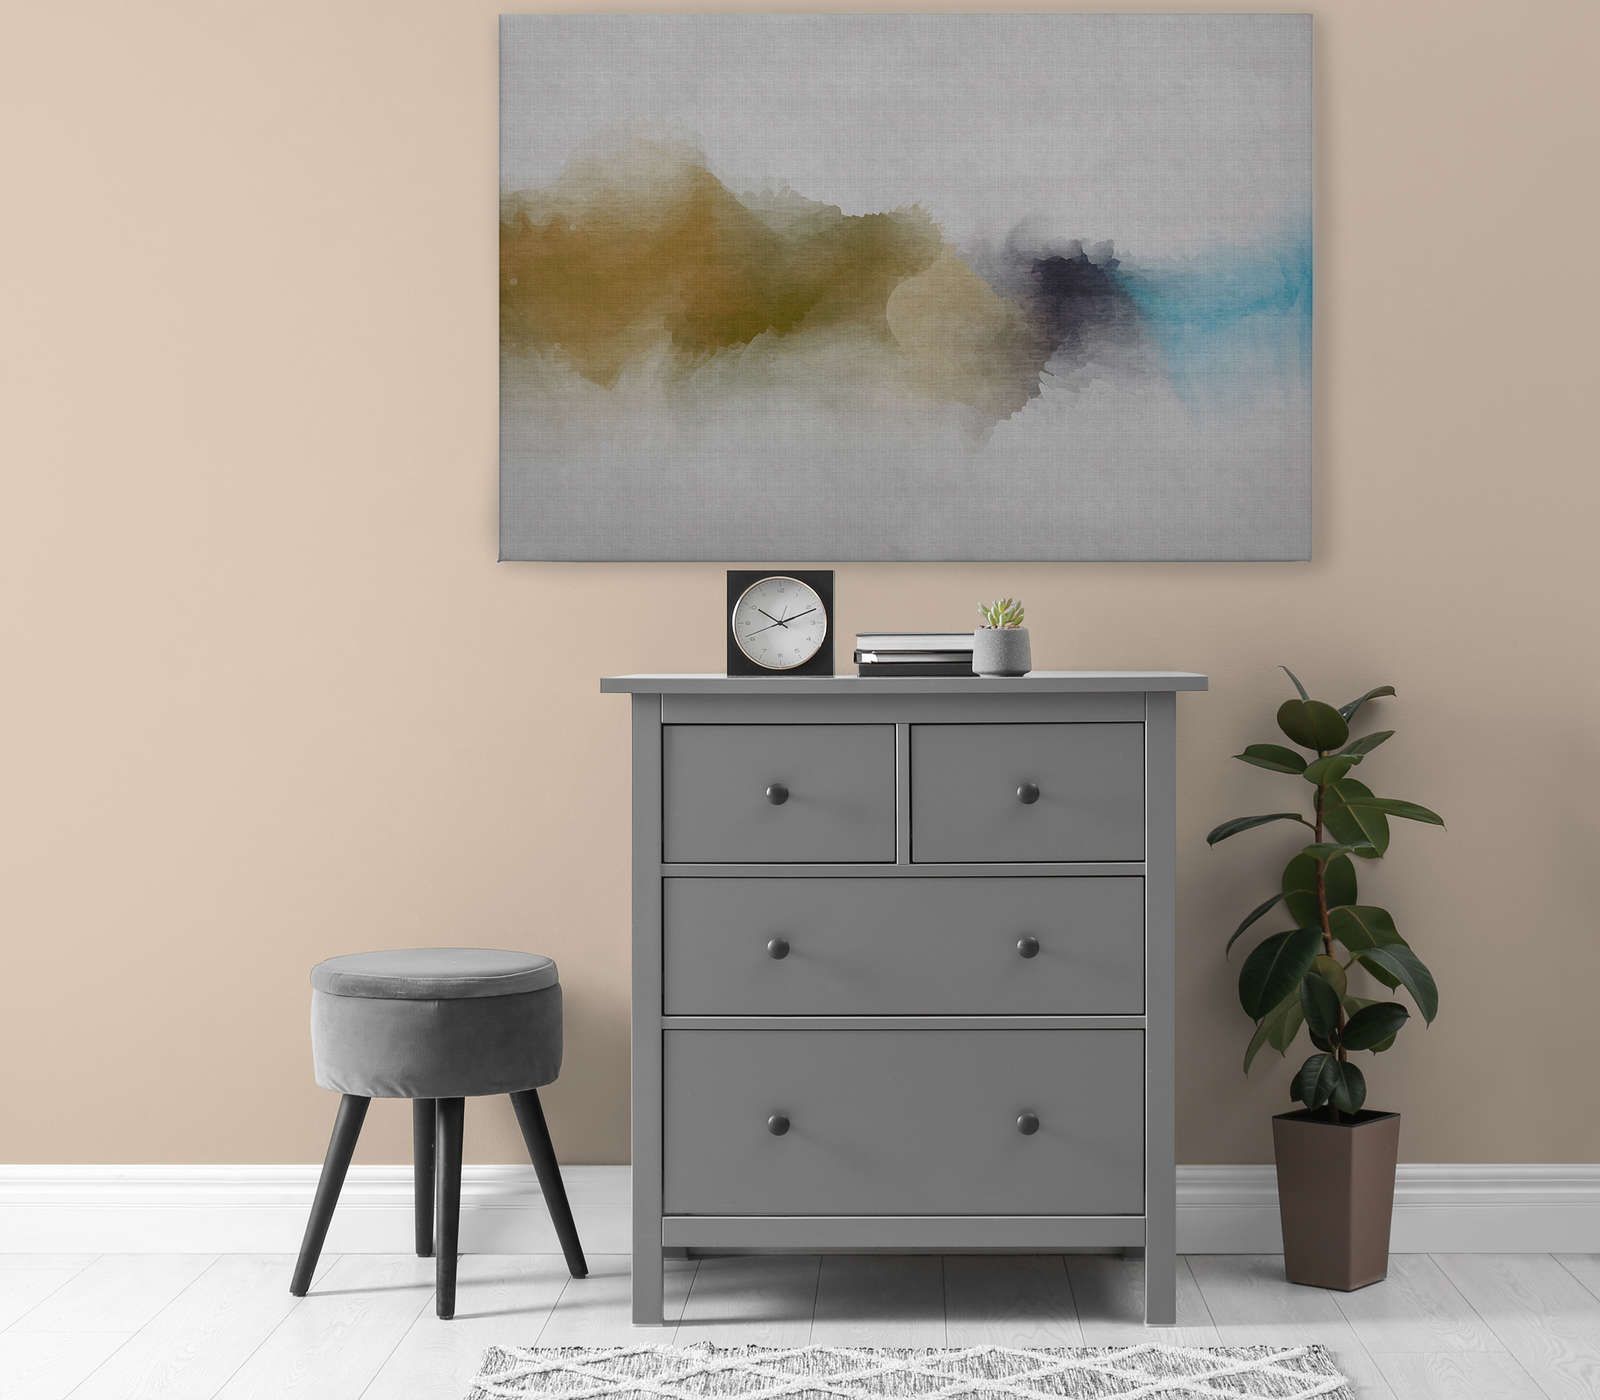             Daydream 3 - Toile motif aquarelle nuageux - aspect lin naturel - 1,20 m x 0,80 m
        